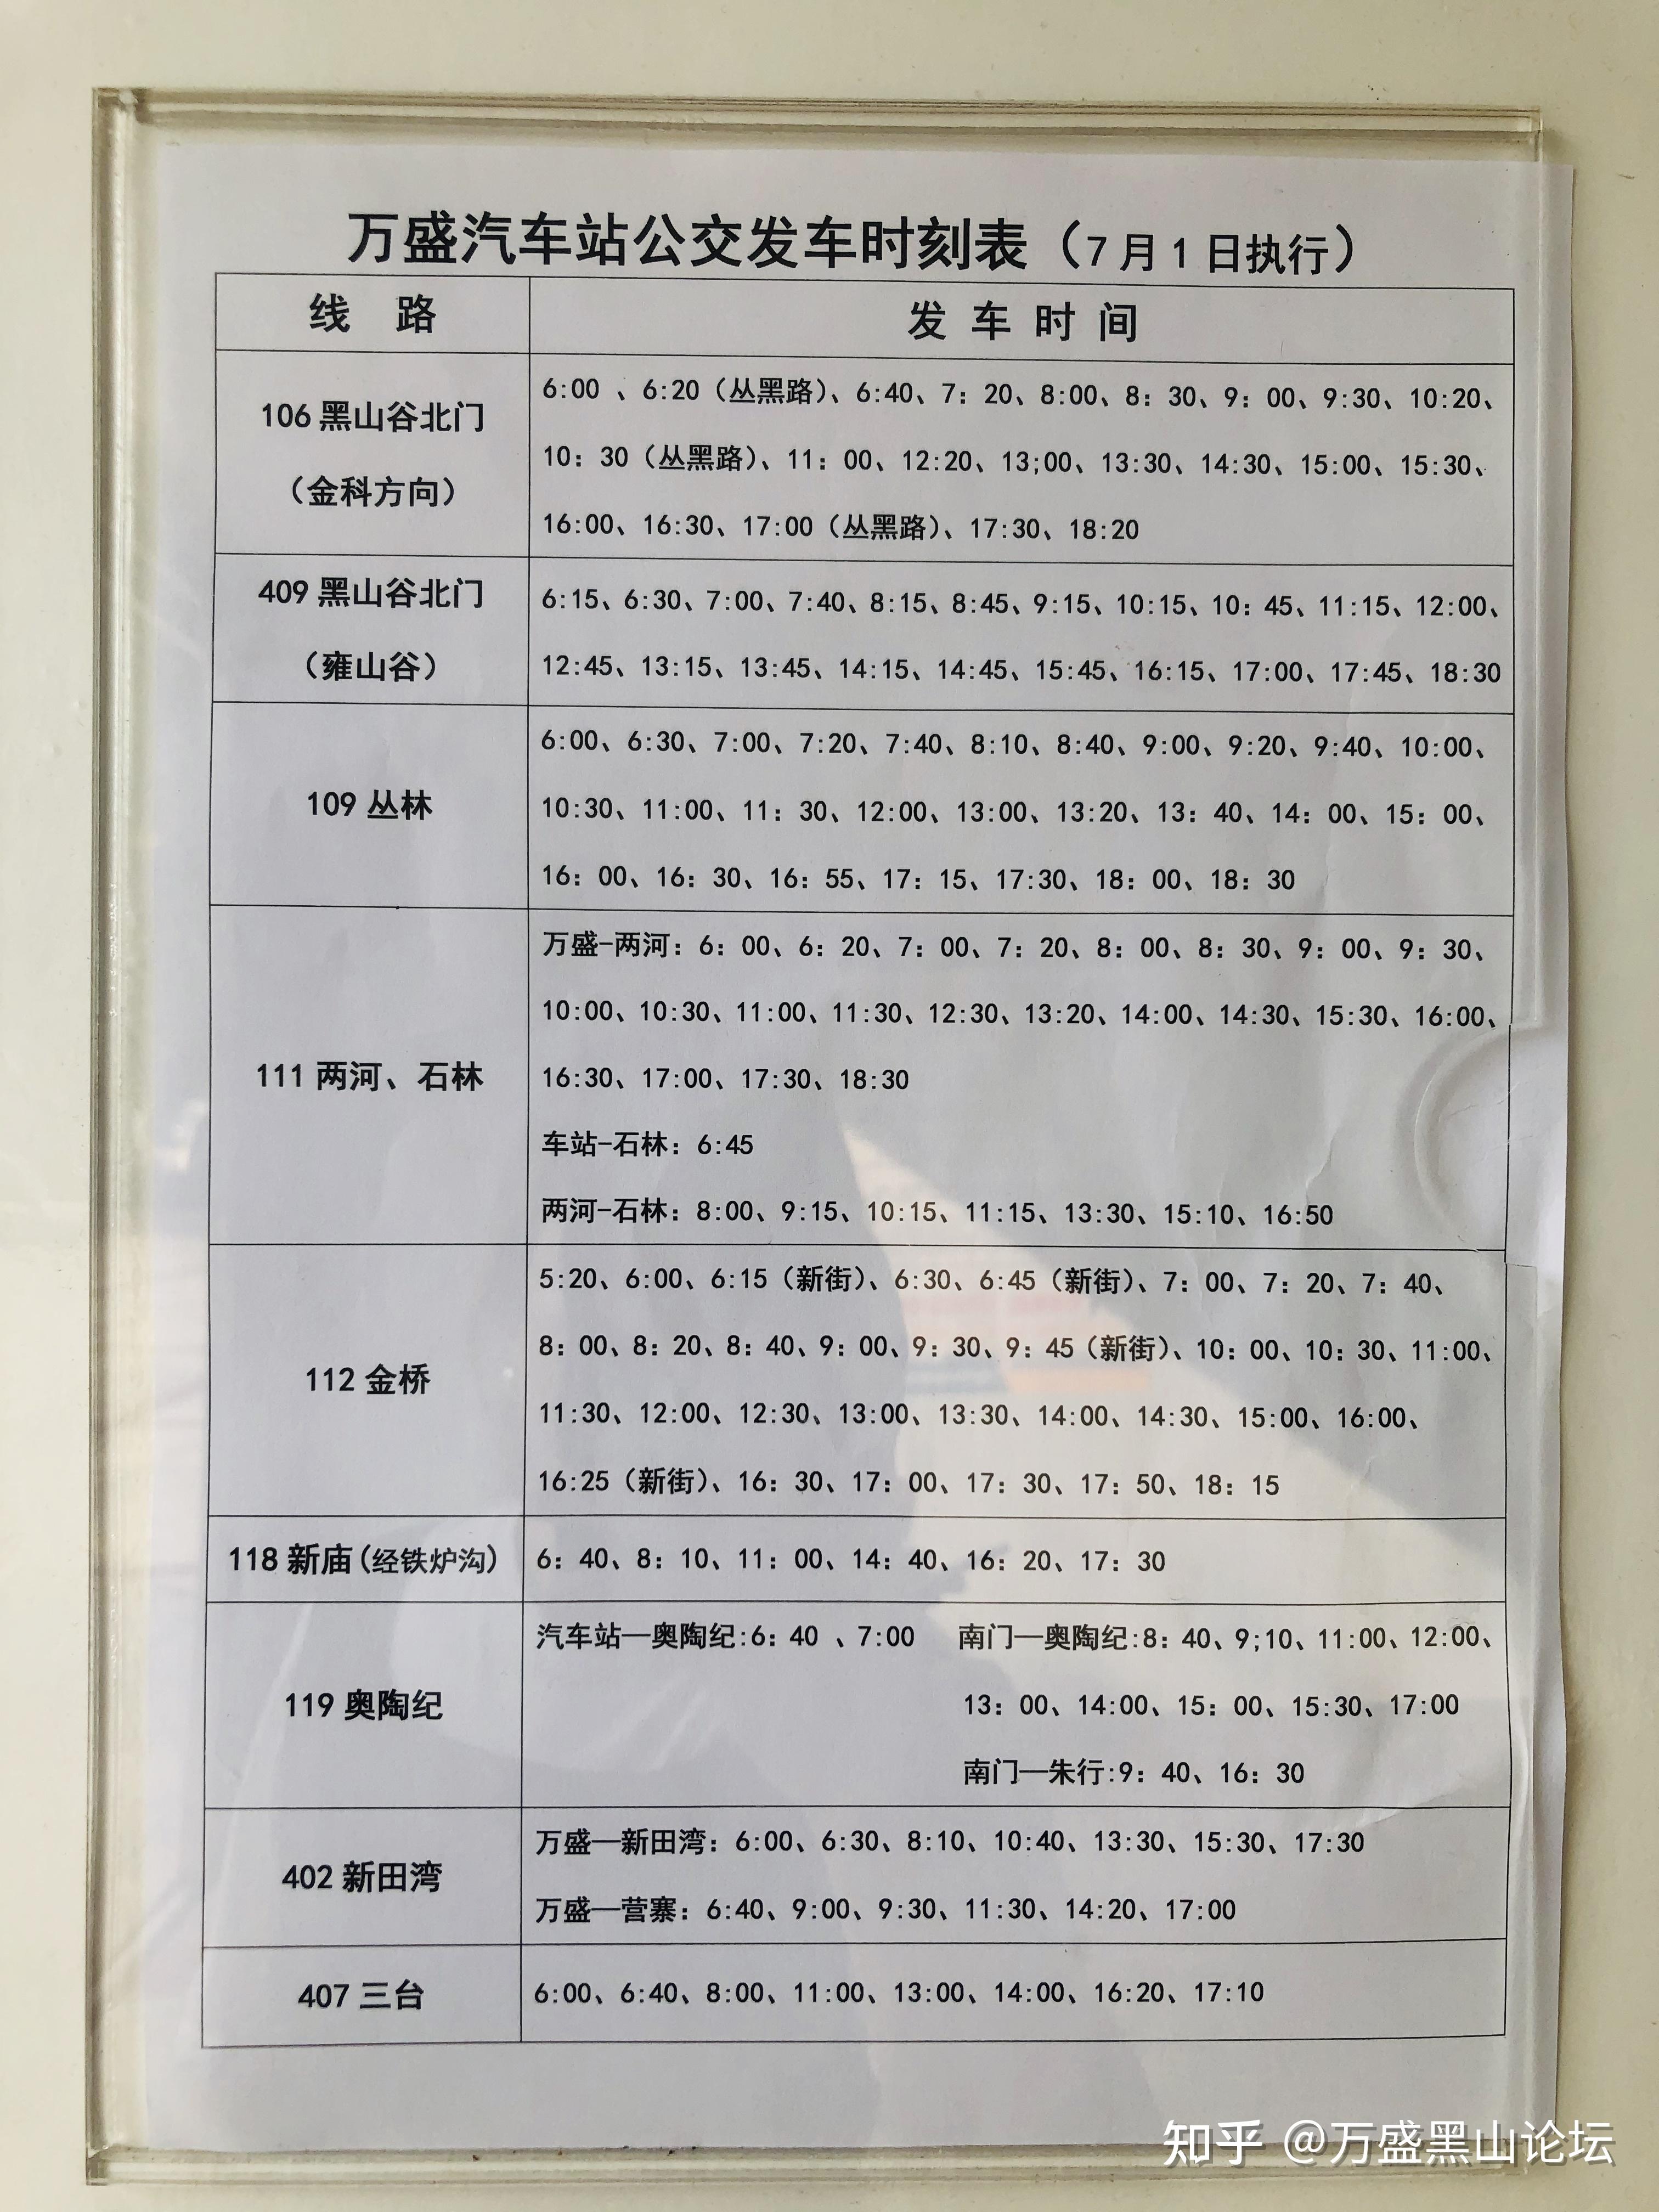 成都地铁4号线运营时间表 - 布条百科